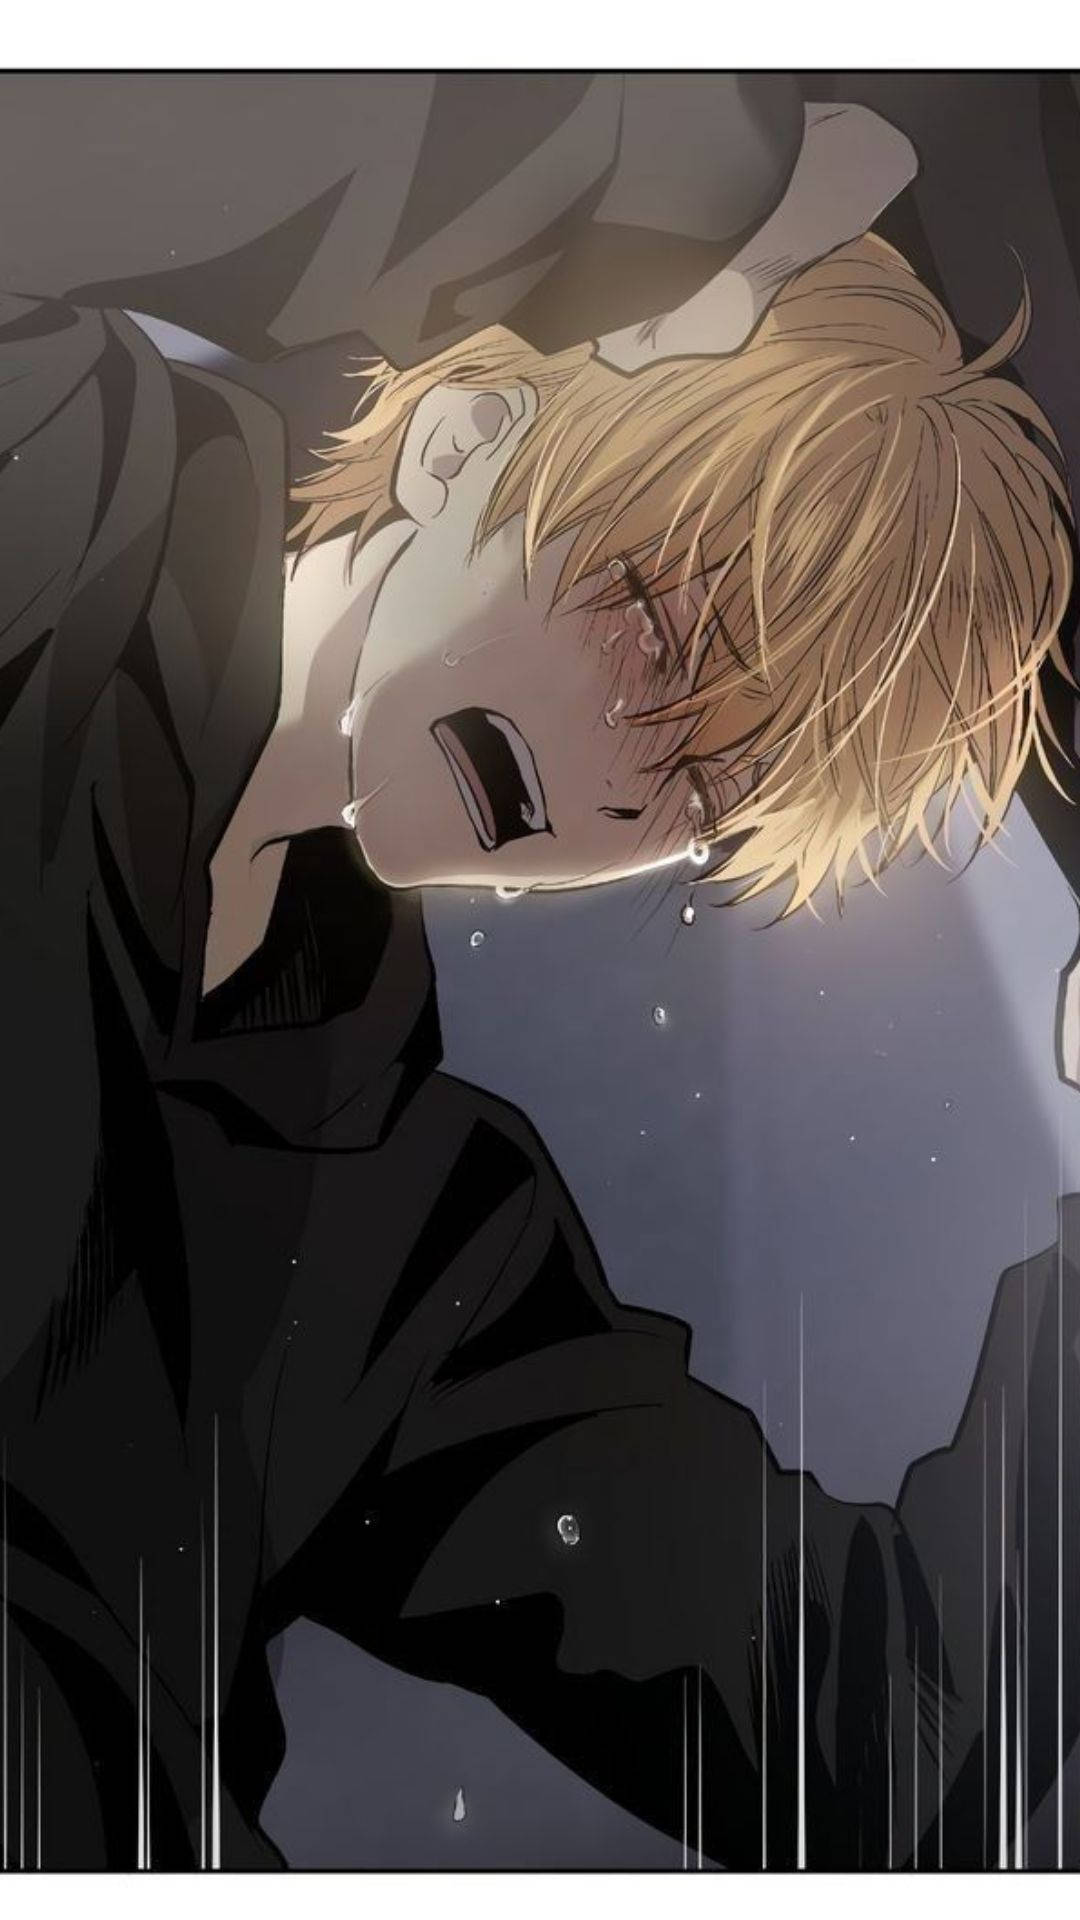 Wailing Anime Boy Sad Aesthetic Background